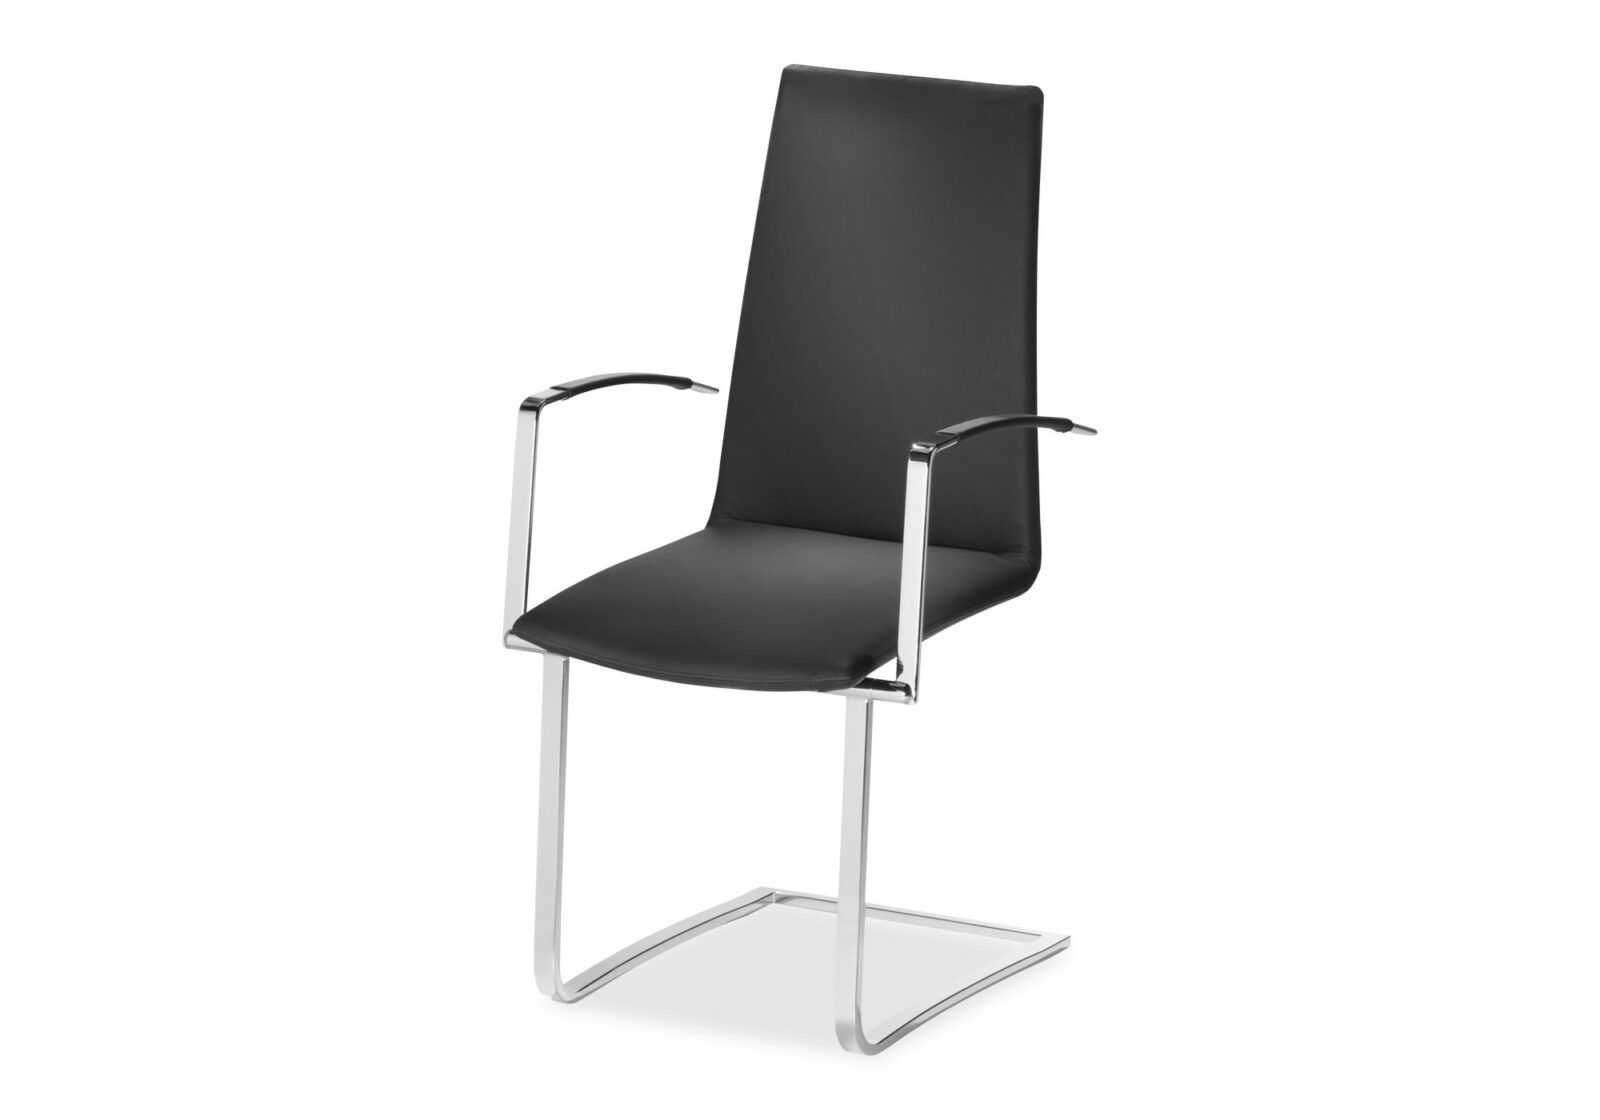 Moderner Freischwinger Stuhl Astra. Bezug: Leder. Farbe: Schwarz. Erhältlich bei Möbel Gallati.